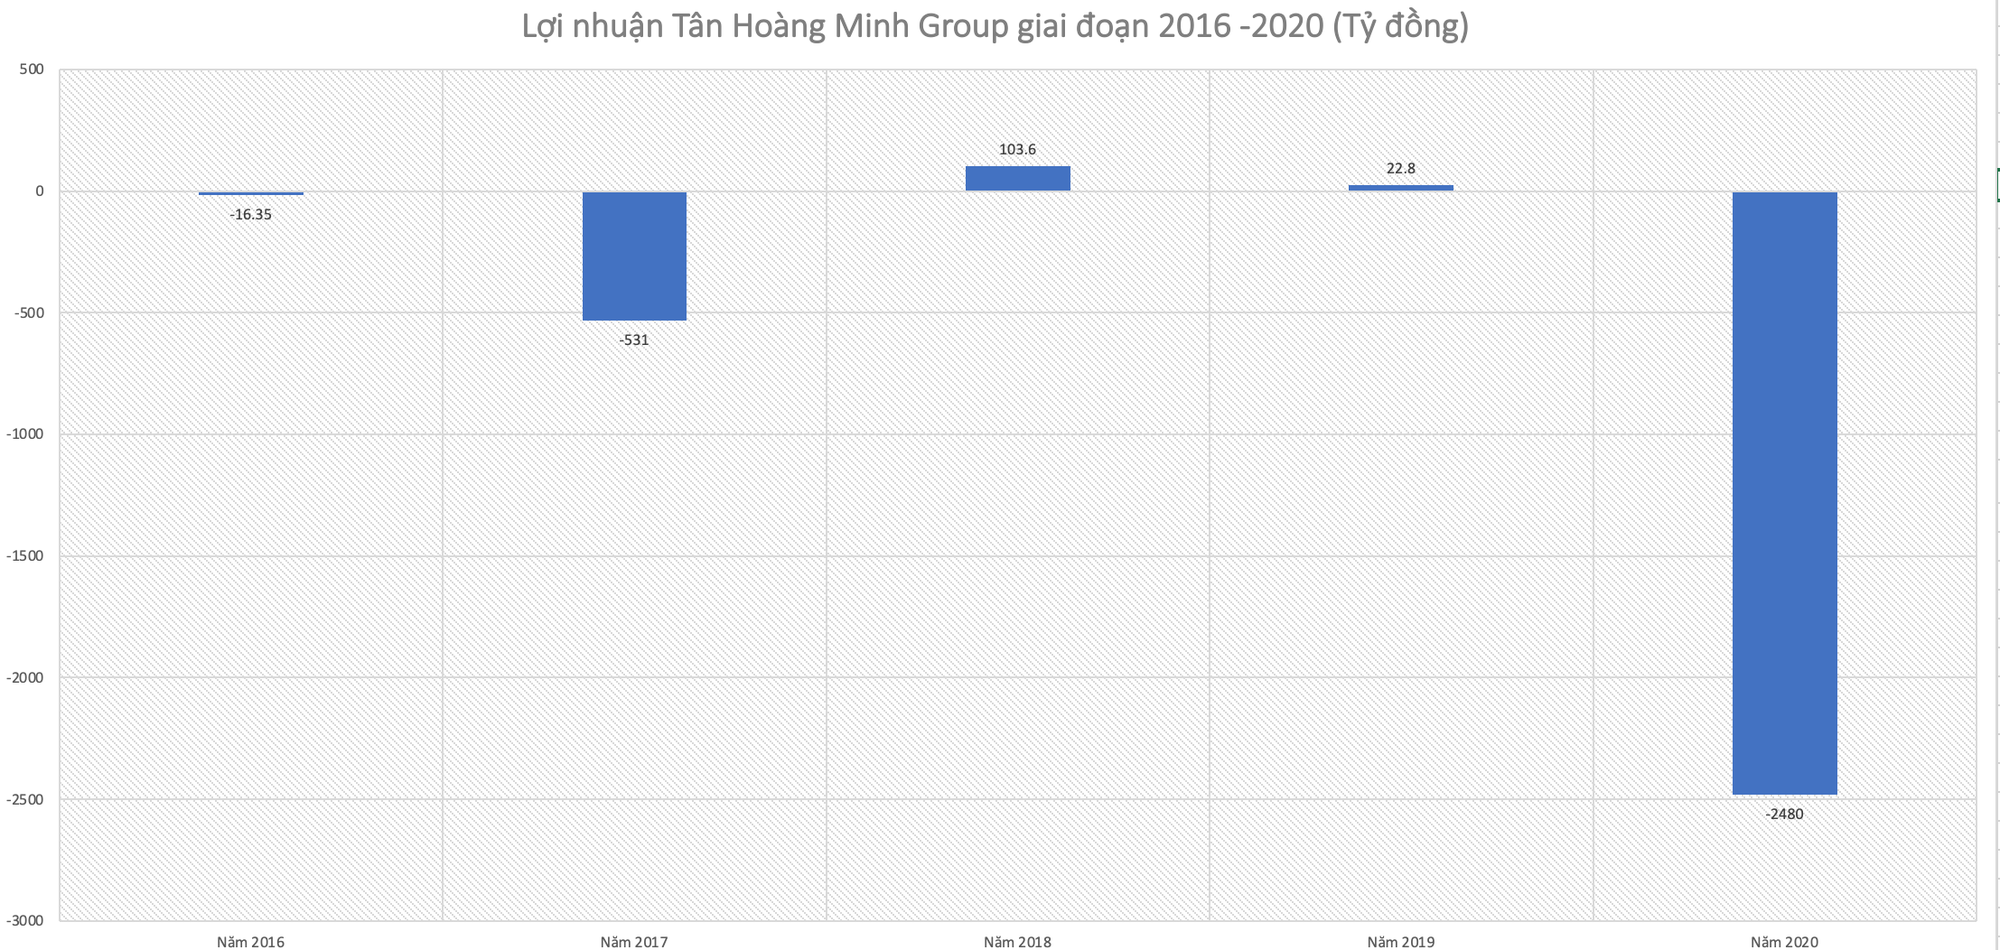 ViMoney: Lợi nhuận Tập đoàn Tân Hoàng Minh giai đoạn 2016 - 2020 